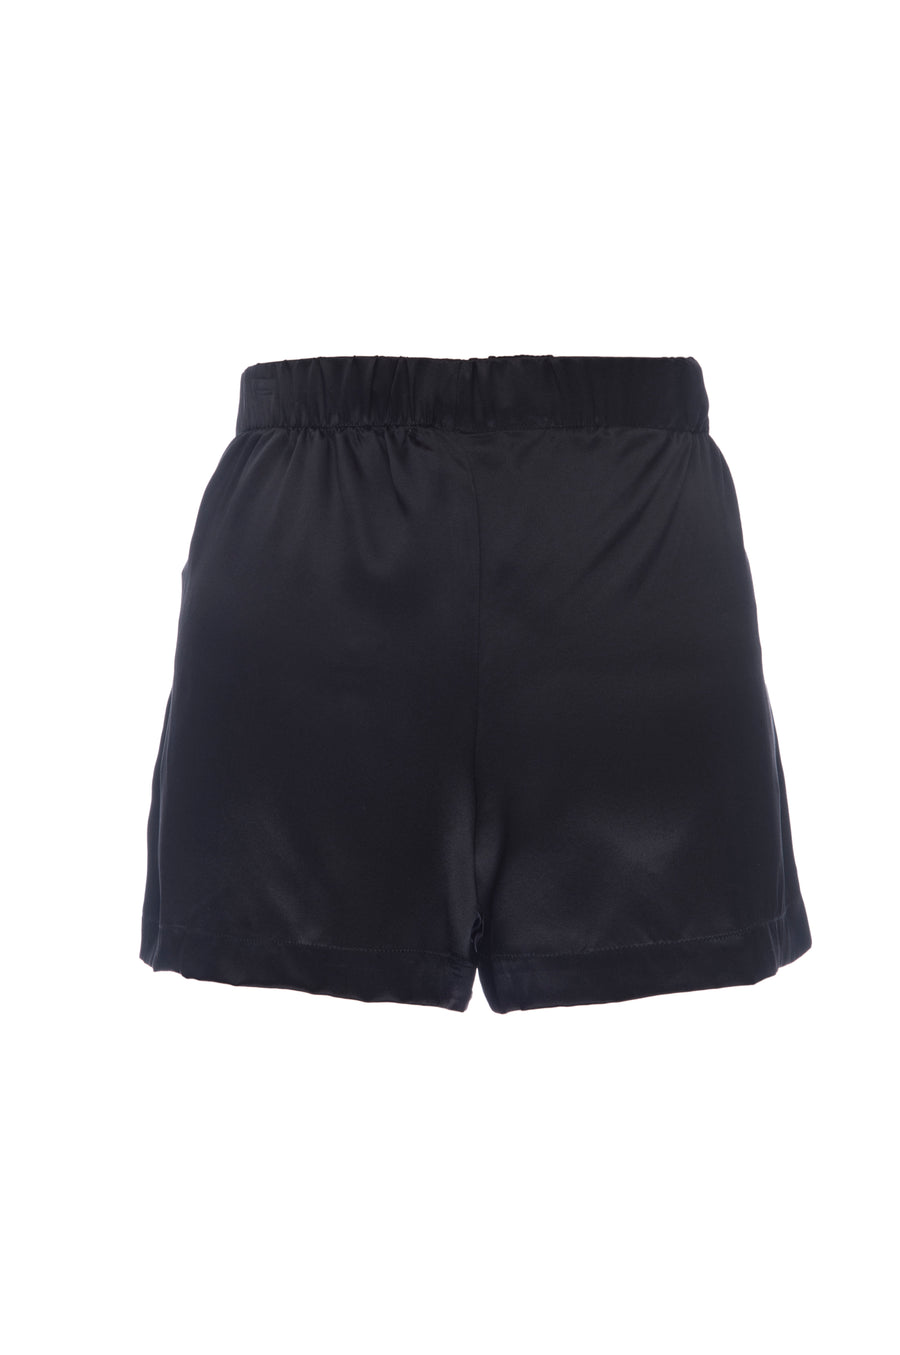 Silk Charmeuse Shorts: Black